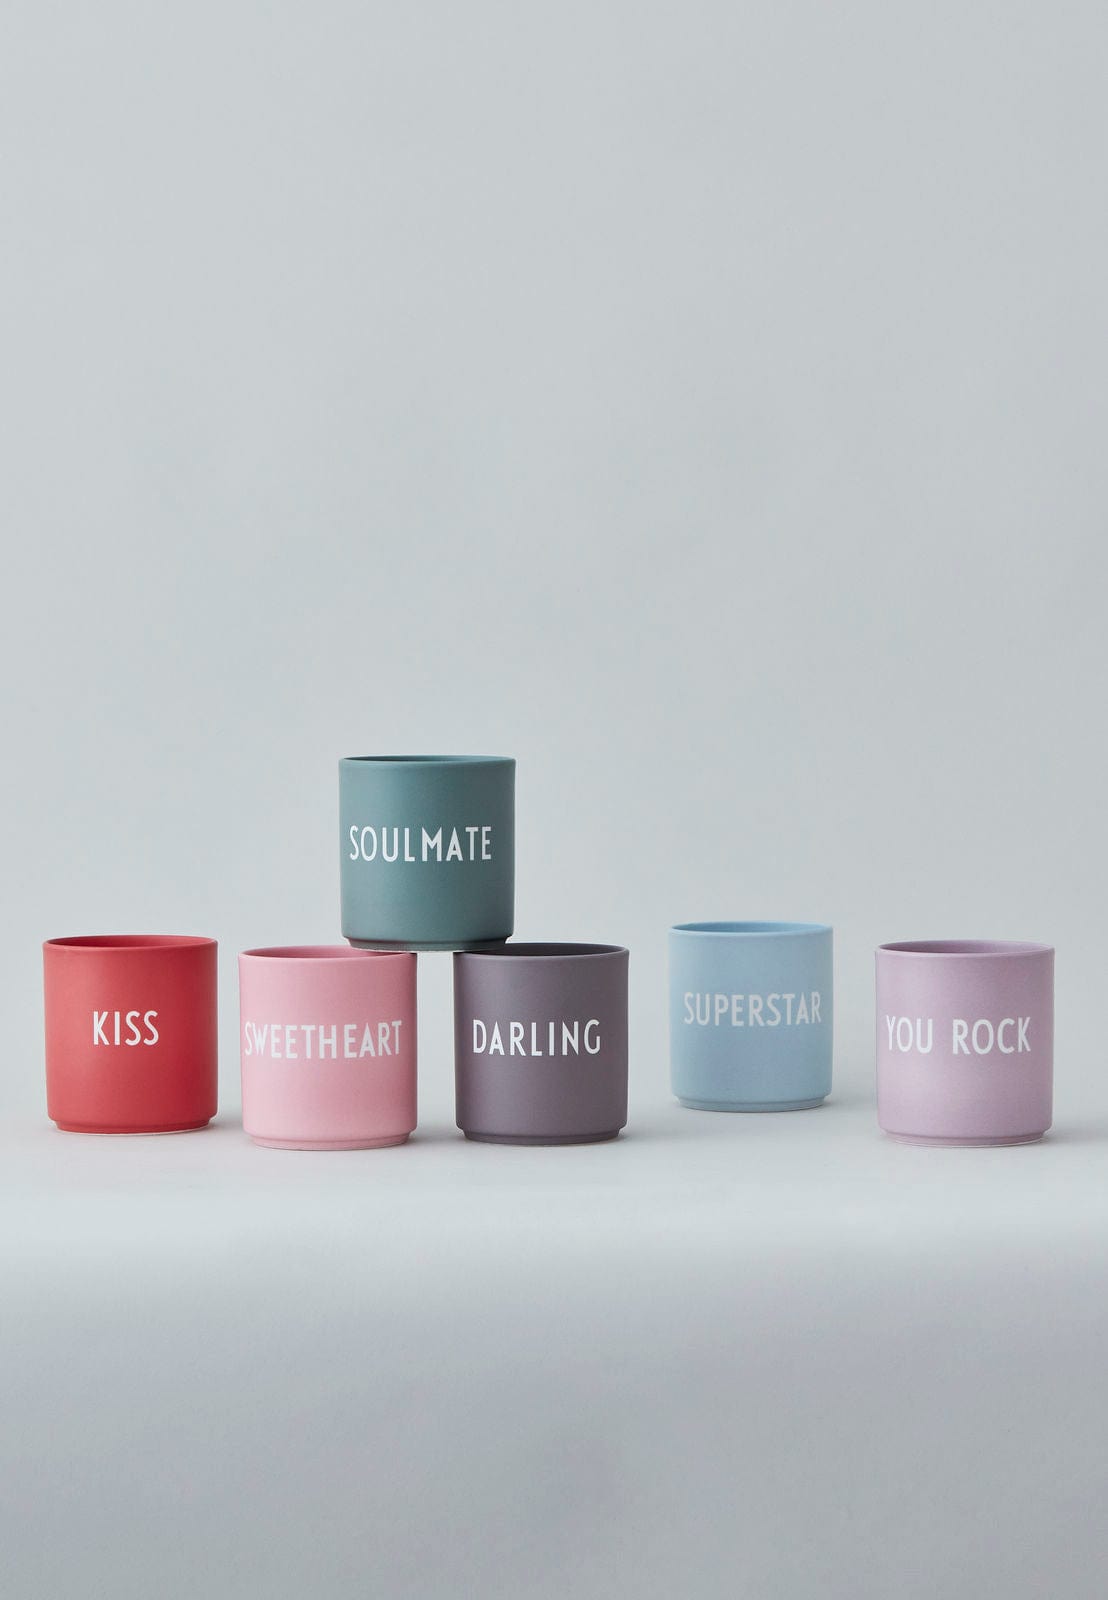 Favorite cup - YOU ROCK fra Design Letters - Otherstuff.dk